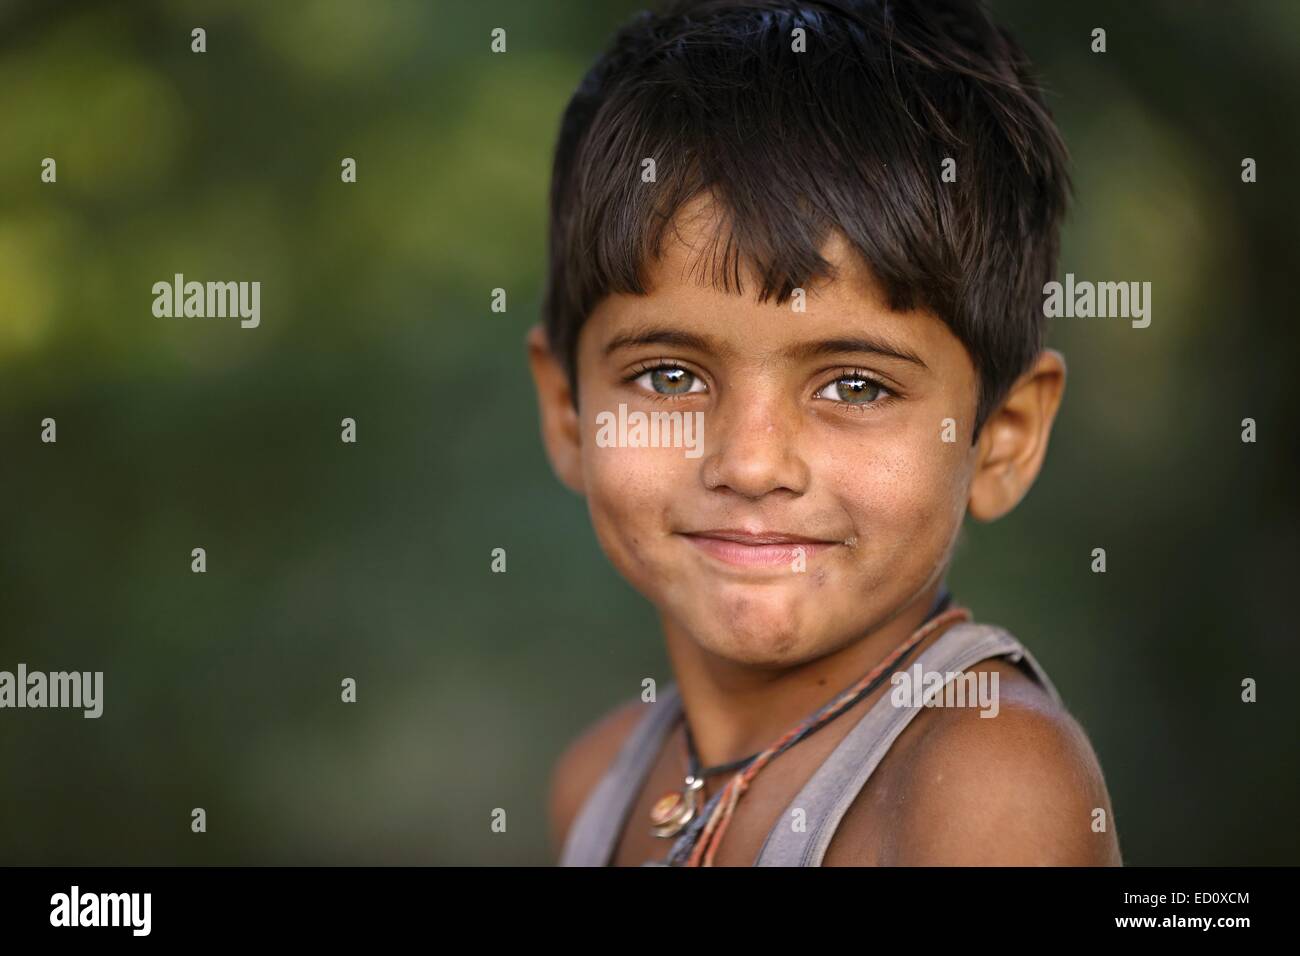 Jeune Indien avec de beaux yeux verts Rajasthan Inde Banque D'Images